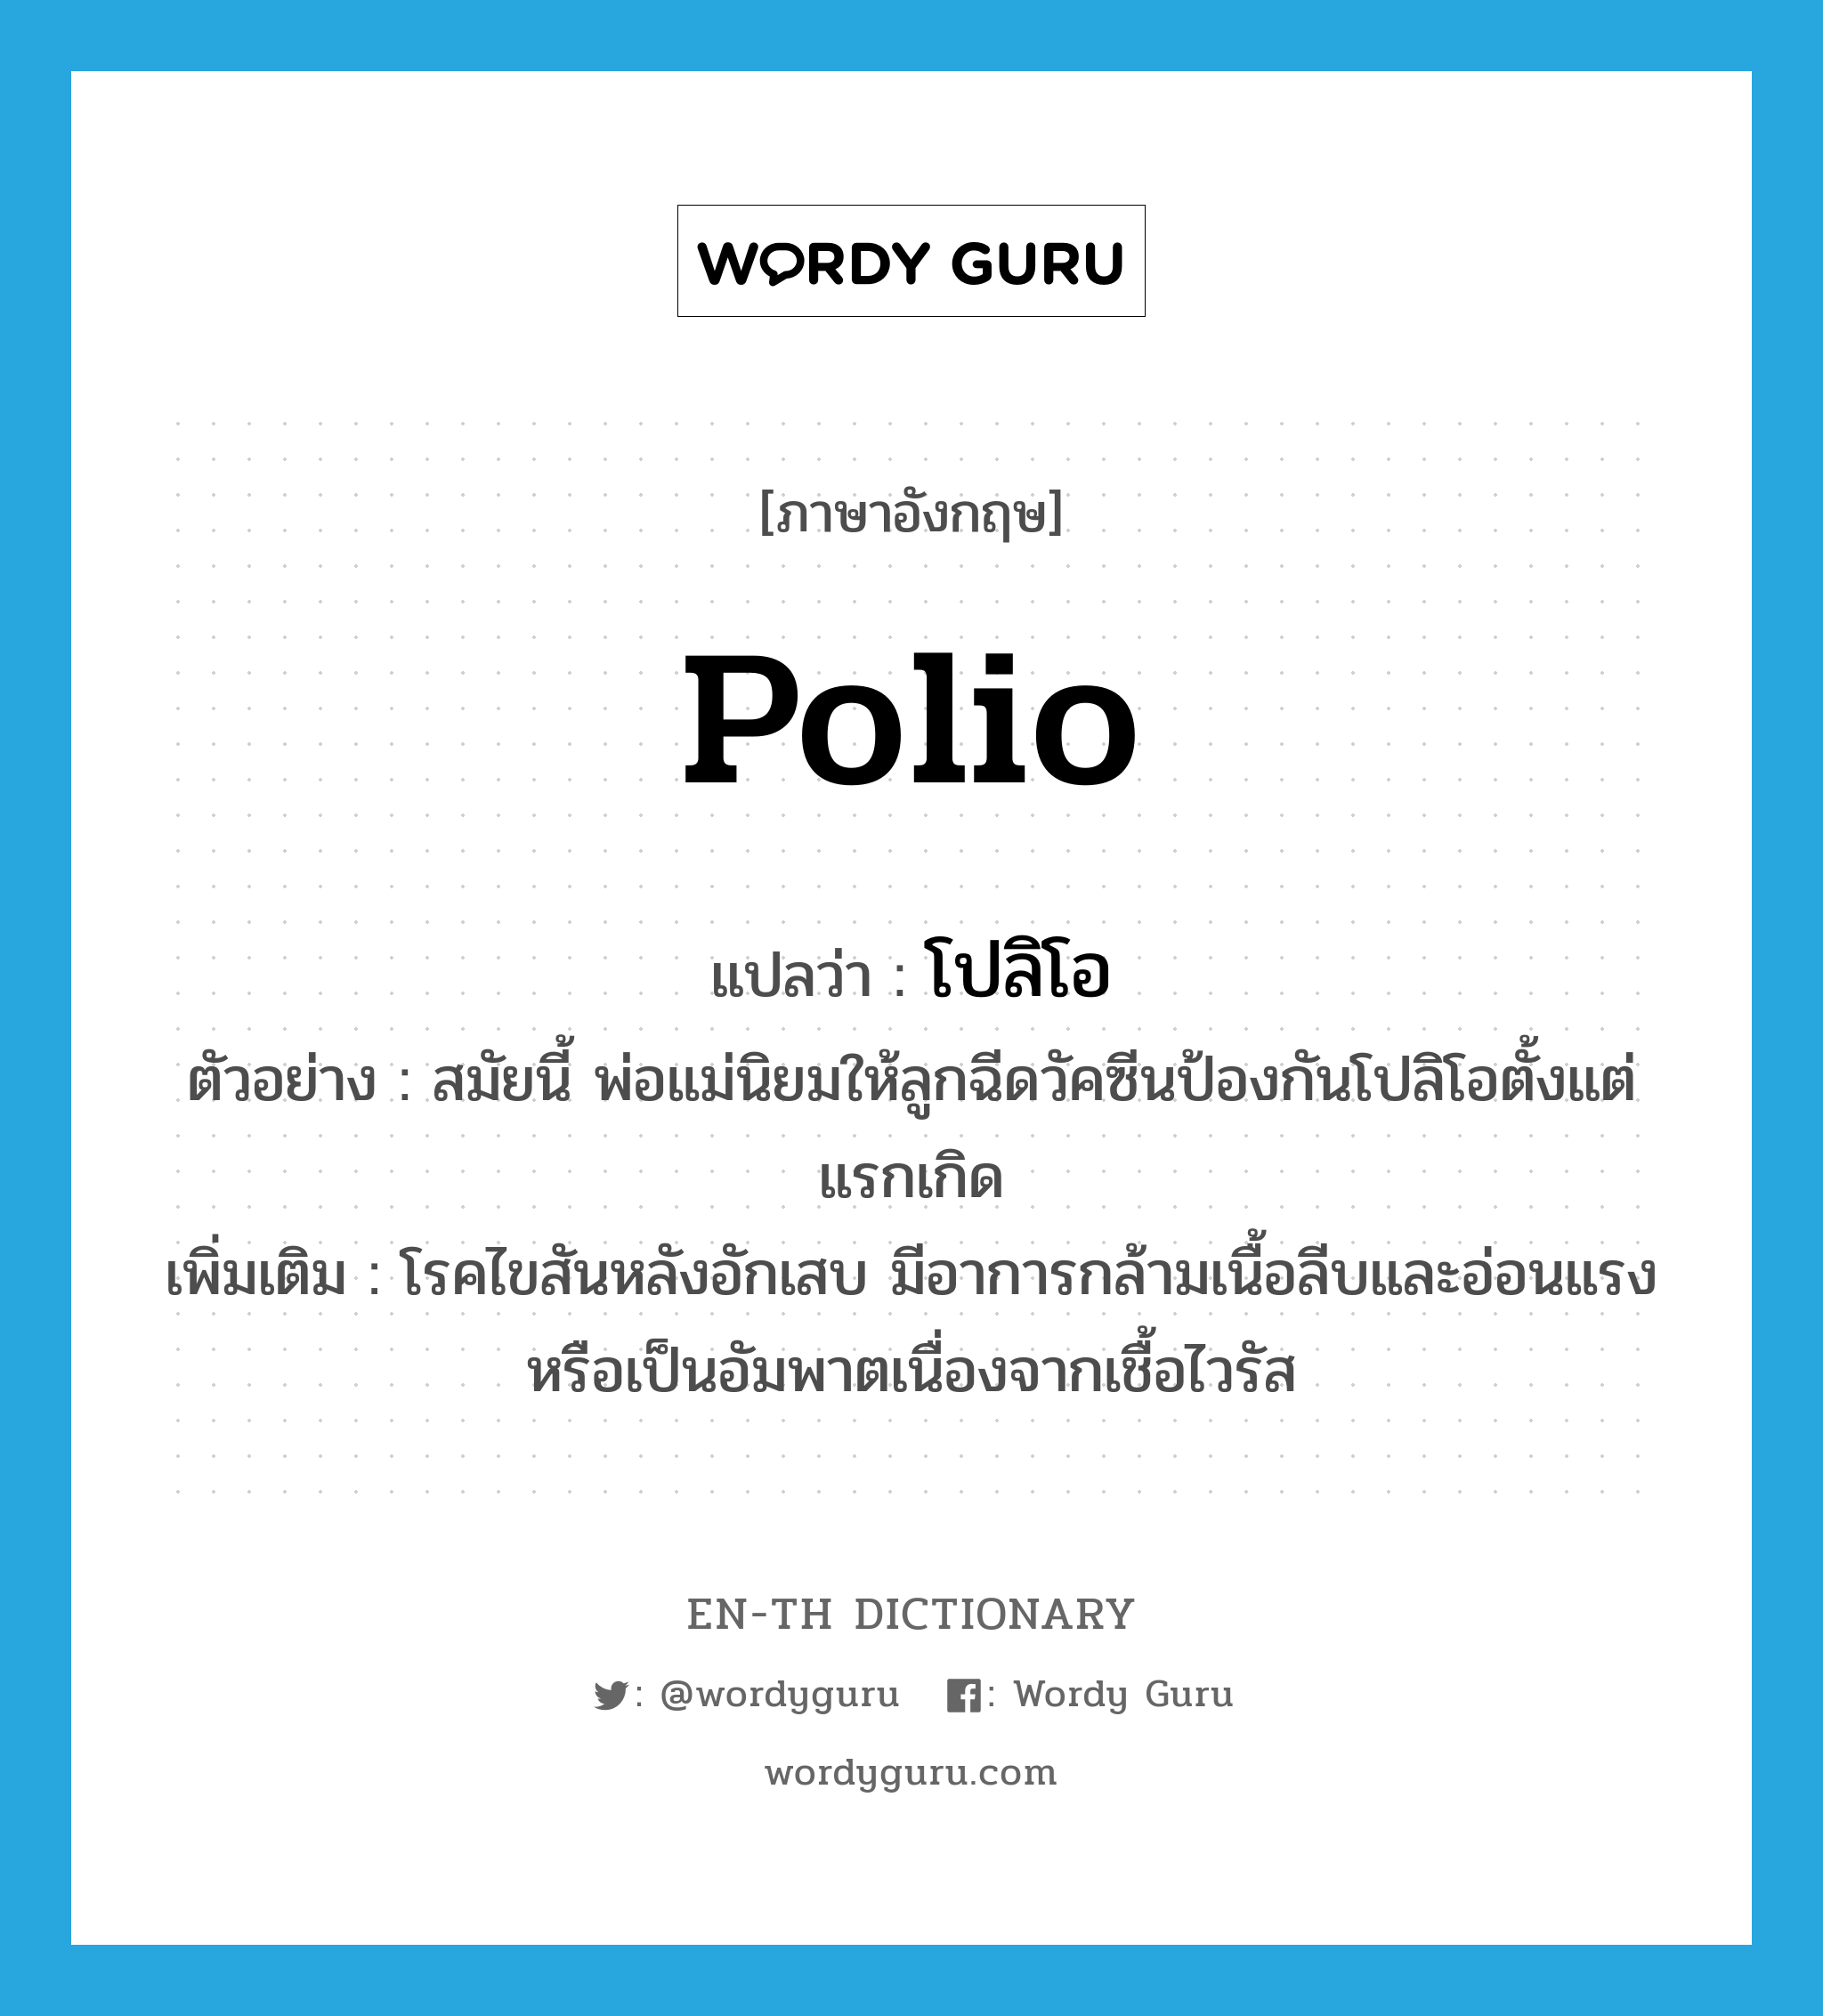 polio แปลว่า?, คำศัพท์ภาษาอังกฤษ polio แปลว่า โปลิโอ ประเภท N ตัวอย่าง สมัยนี้ พ่อแม่นิยมให้ลูกฉีดวัคซีนป้องกันโปลิโอตั้งแต่แรกเกิด เพิ่มเติม โรคไขสันหลังอักเสบ มีอาการกล้ามเนื้อลีบและอ่อนแรงหรือเป็นอัมพาตเนื่องจากเชื้อไวรัส หมวด N